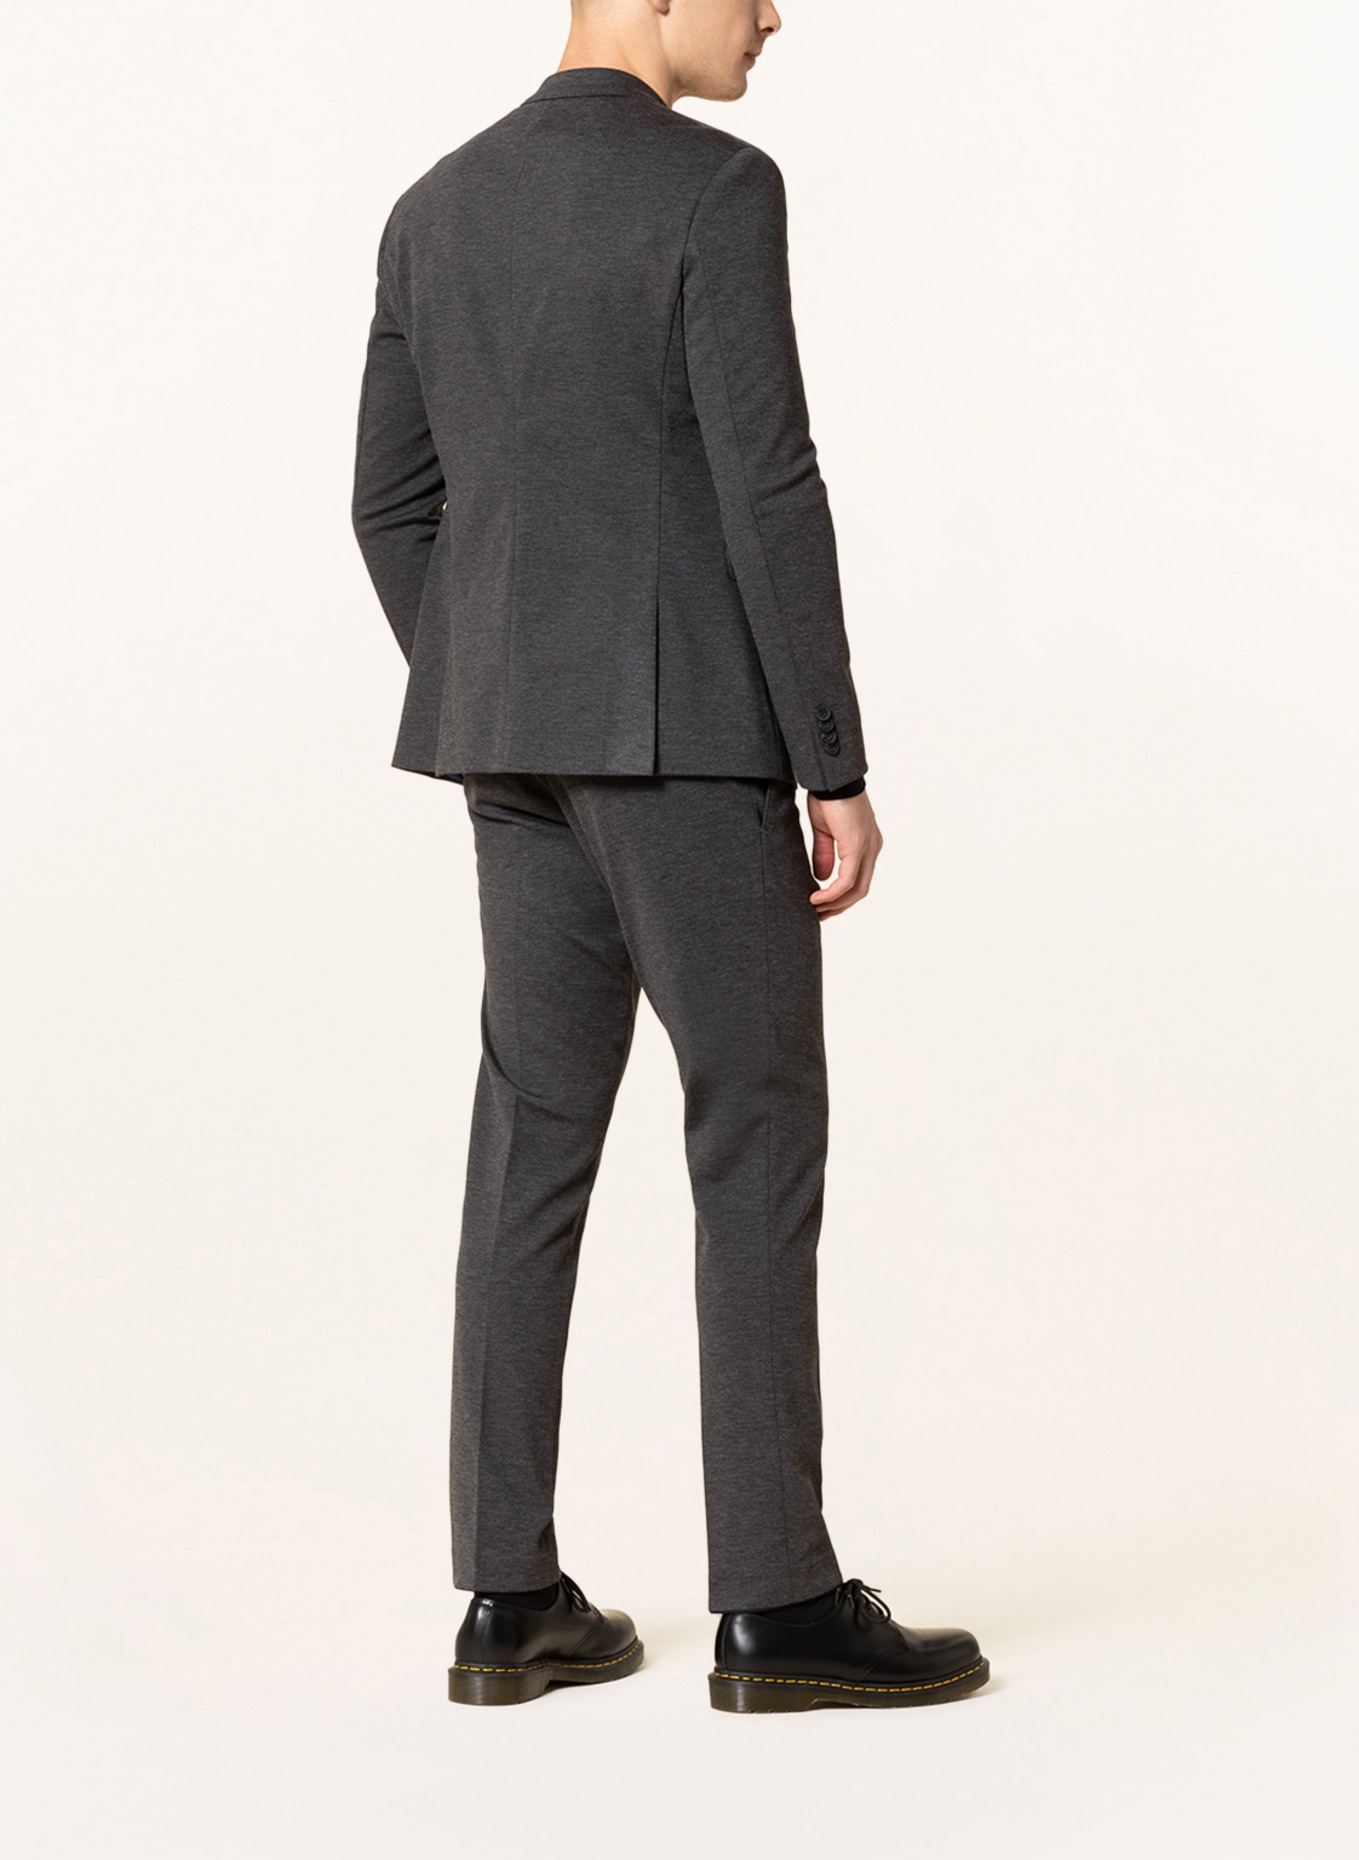 PAUL Suit jacket slim fit, Color: 750 Charcoal (Image 3)